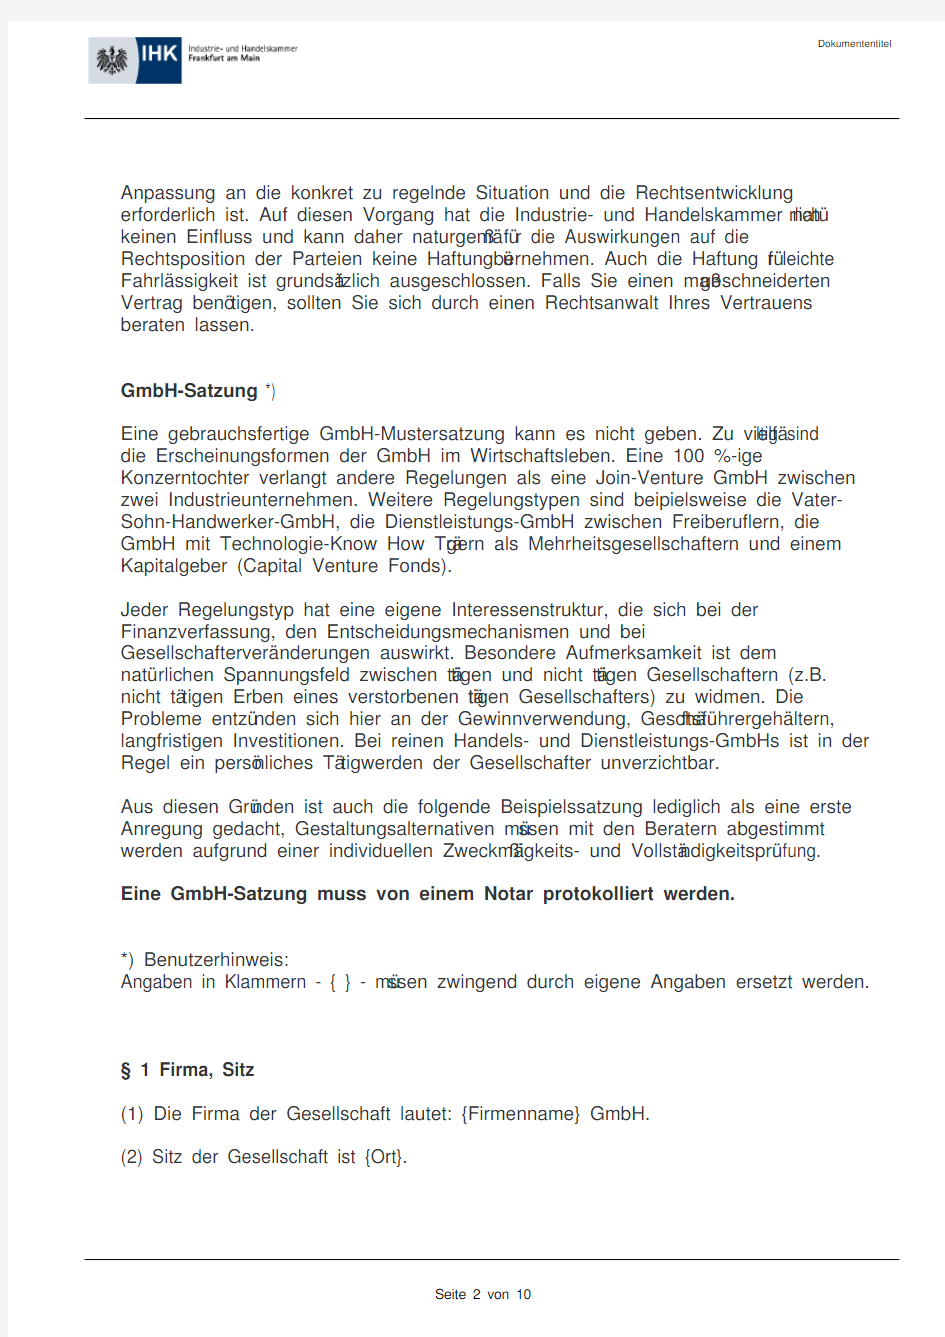 德国有限责任公司章程 GmbH-Satzung